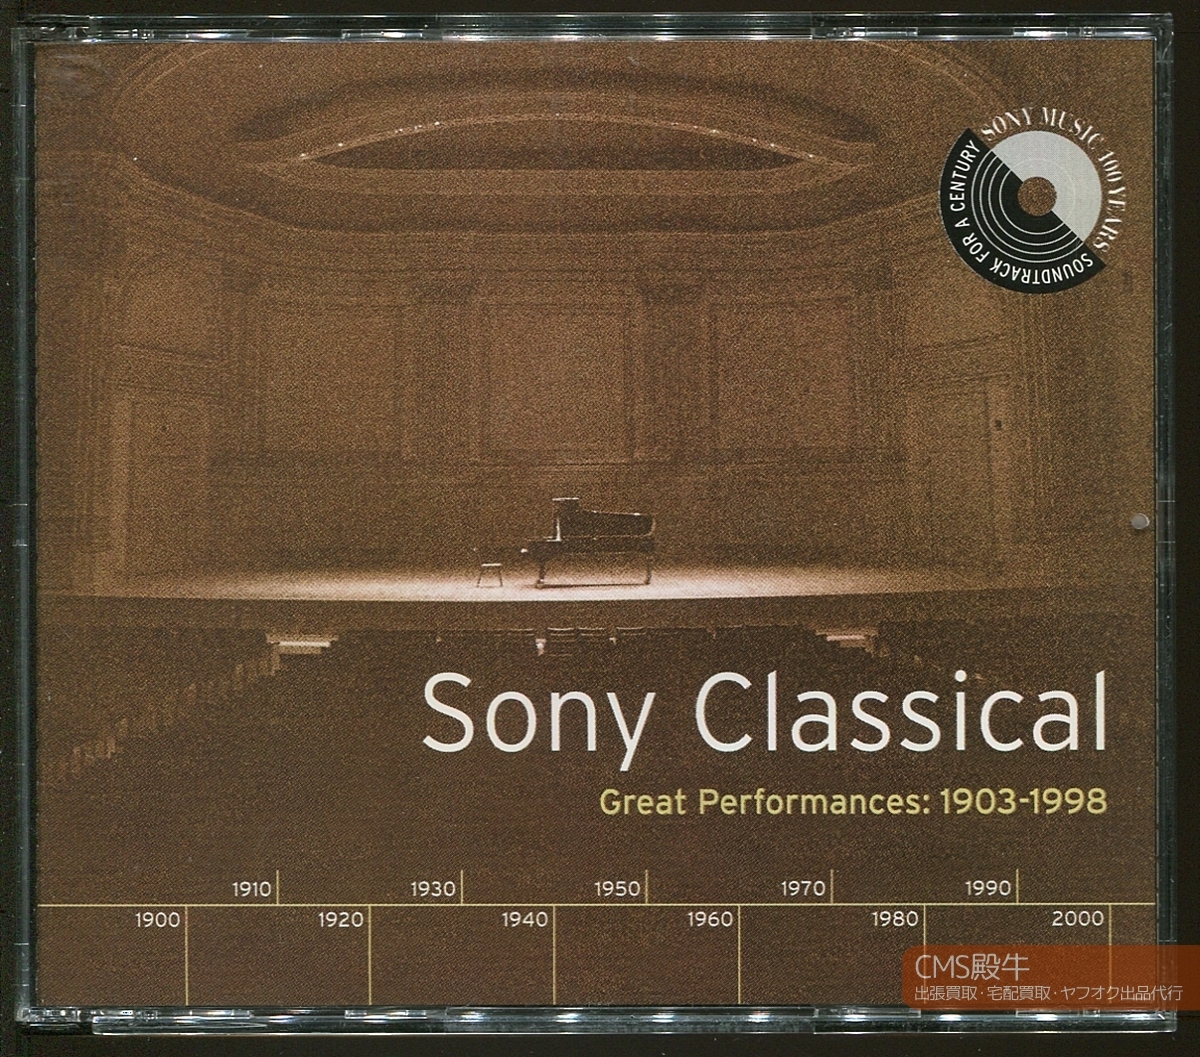 ATO2401-0293＞４枚組◆Sony Classical Great Performances 1903-1998／シゲティ・ワルター・ホロヴィッツ・バーンスタイン・グールド他_ご覧いただき誠にありがとうございます